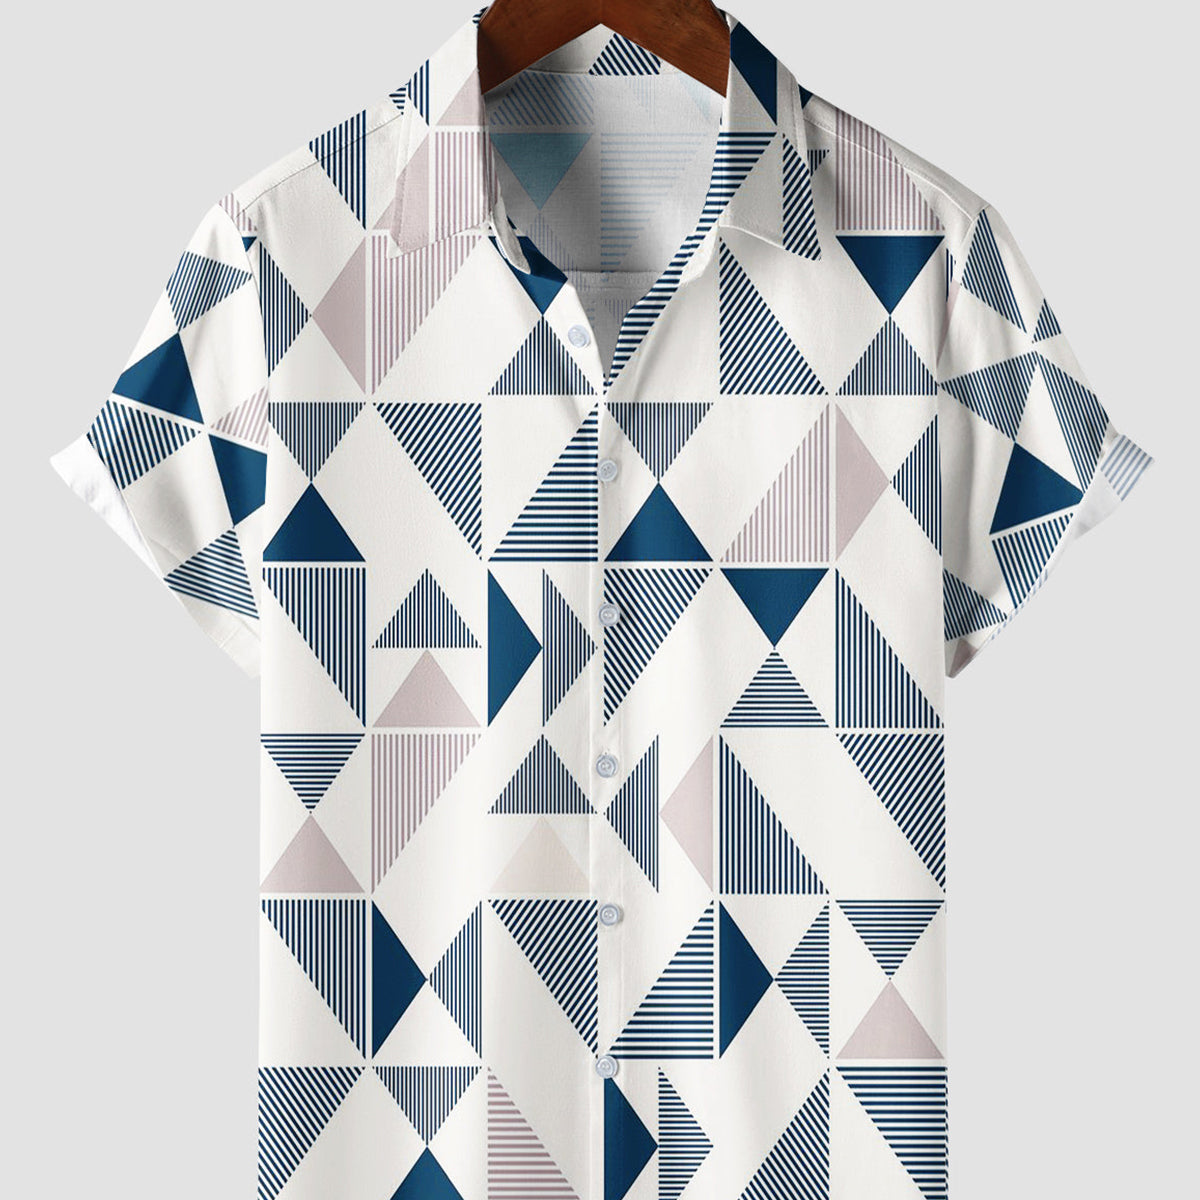 Camisa con botones de playa de verano de manga corta con estampado geométrico triangular azul y blanco de arte informal para hombre